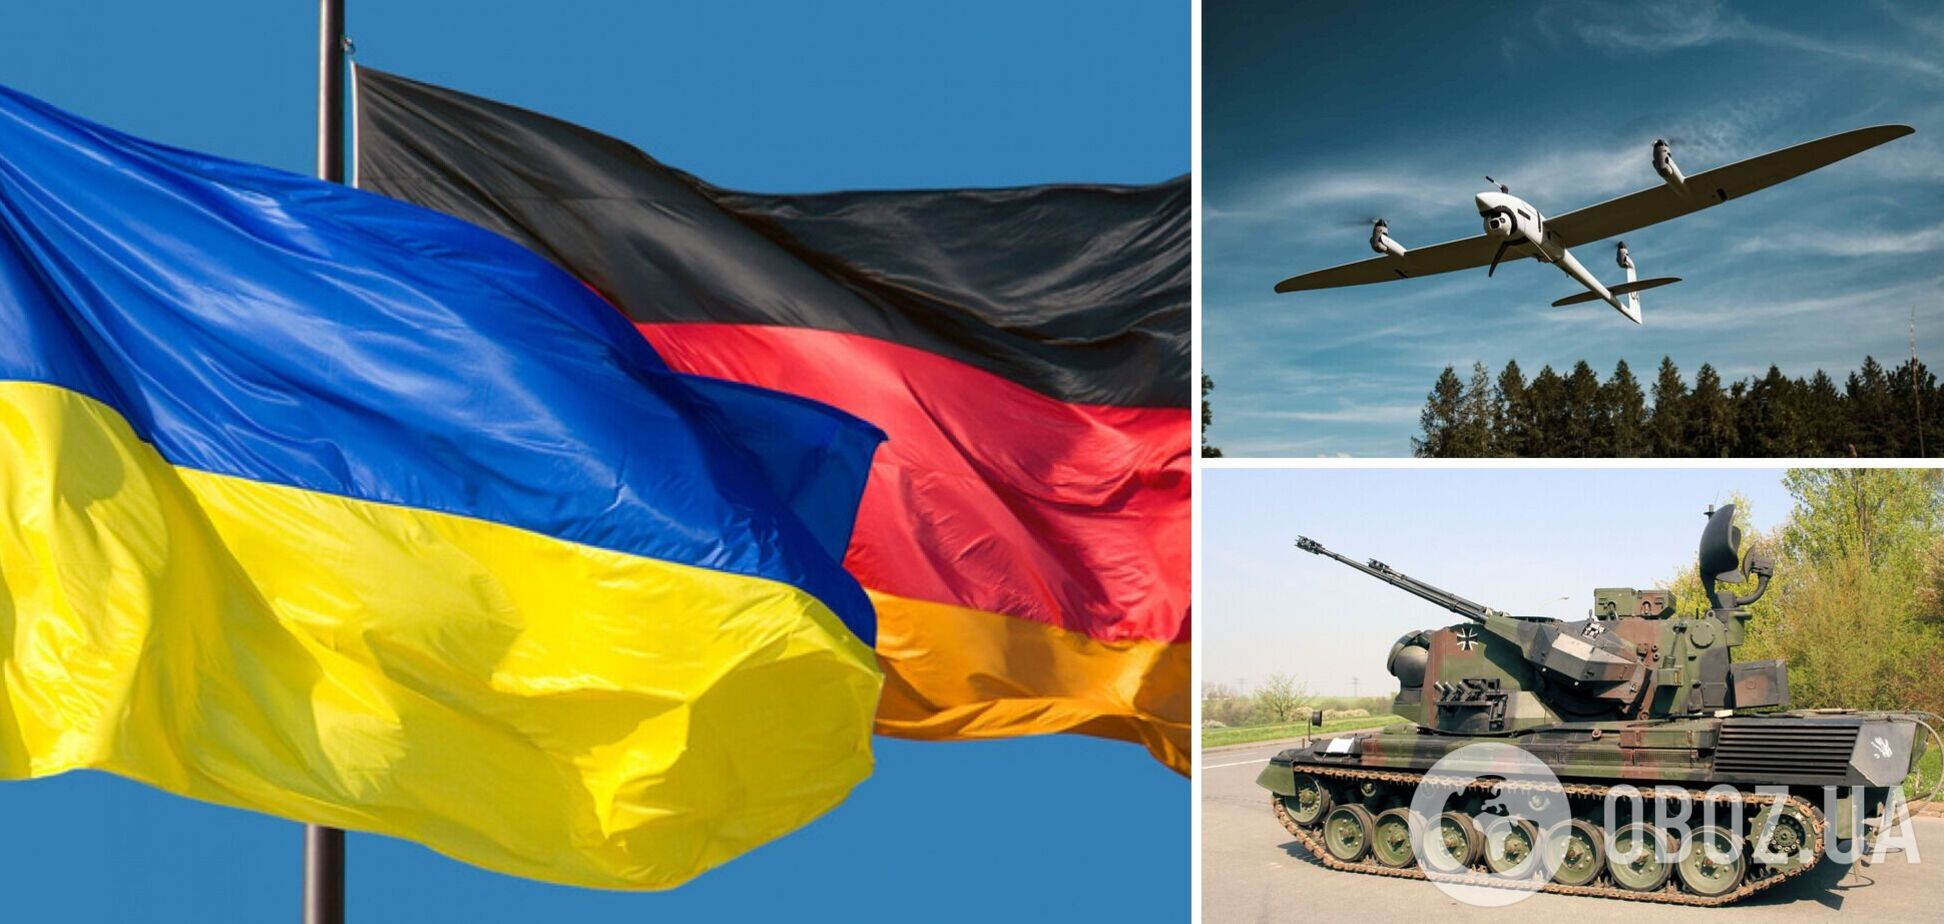 ЗСУ Gepard и многое другое: Германия передала Украине очередную партию военной помощи